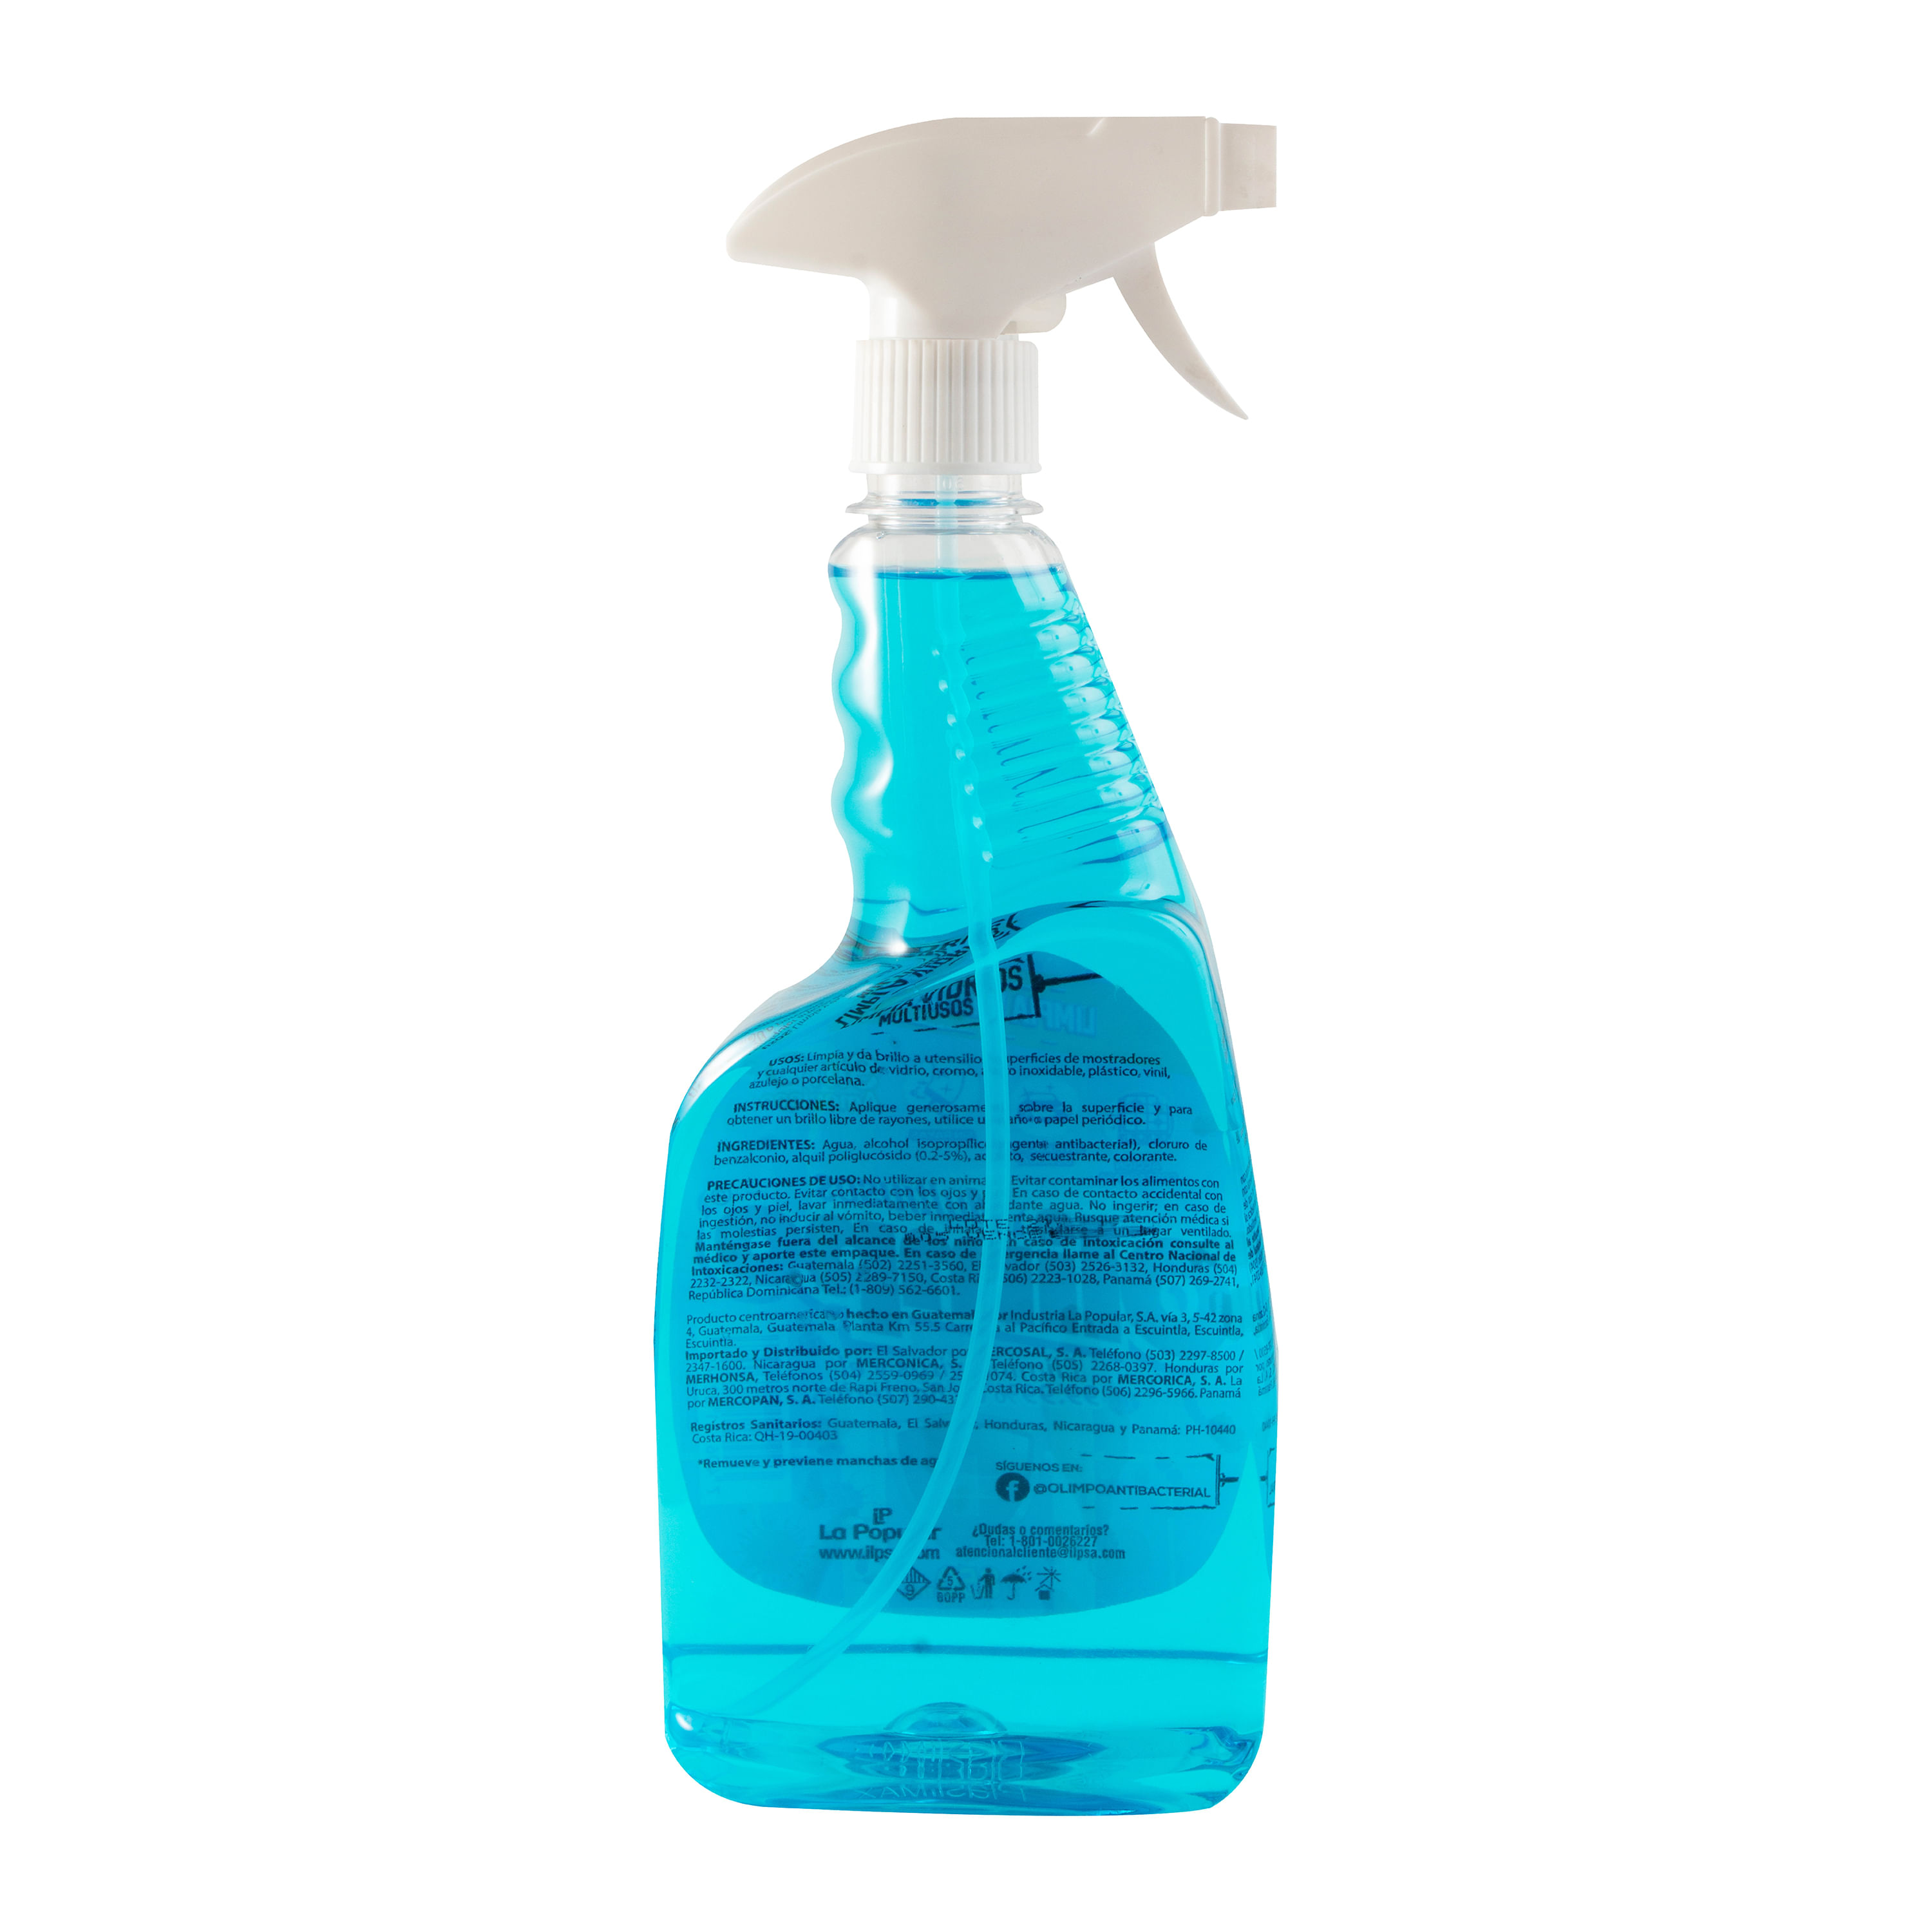 Botella de Windex para limpiar vidrio y limpiador de ventanas, 100 %  plástico reciclado, color azul original, 23 fl oz